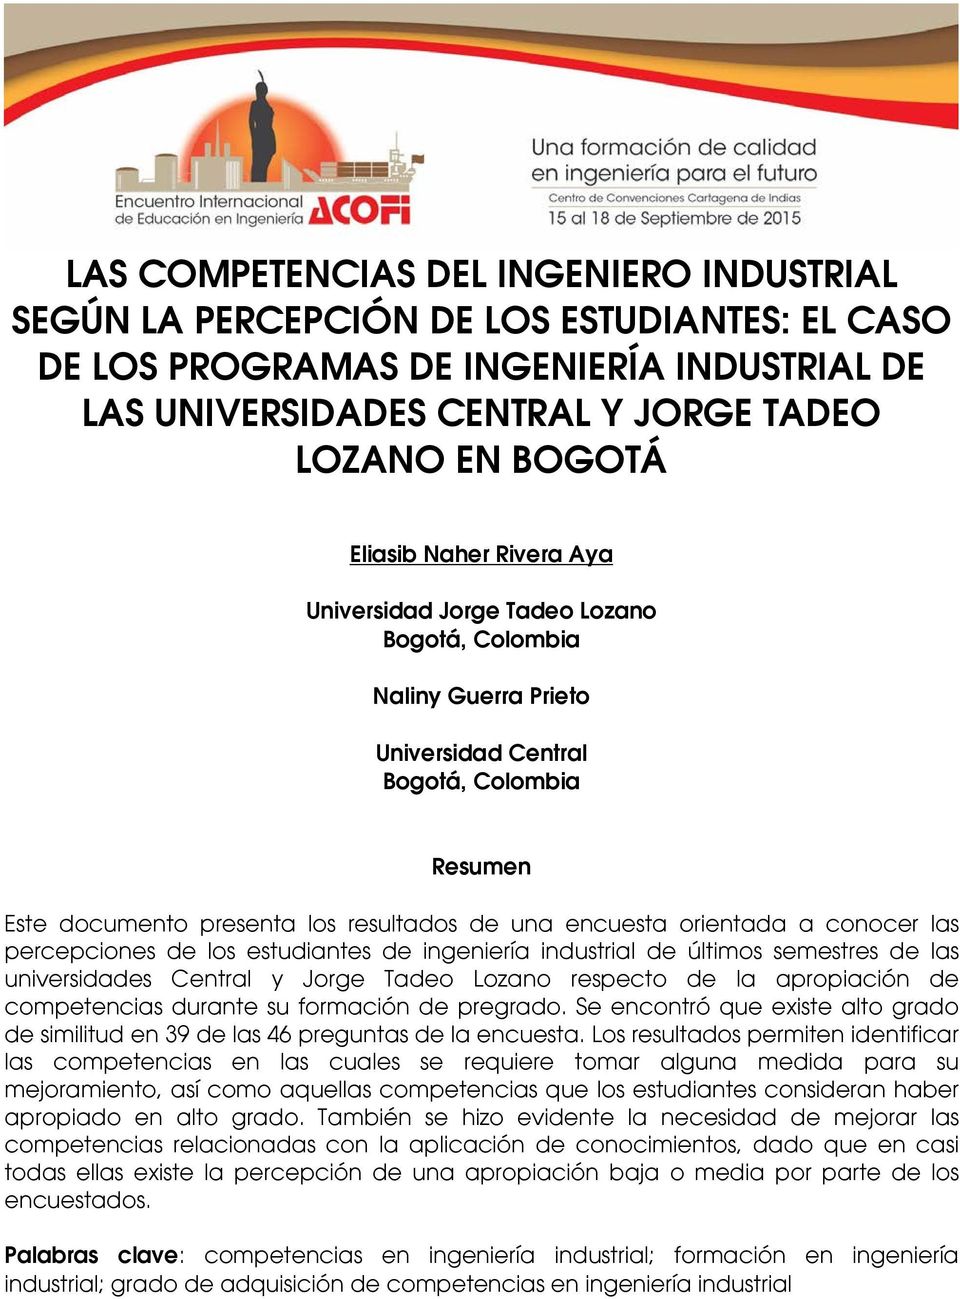 conocer las percepciones de los estudiantes de ingeniería industrial de últimos semestres de las universidades Central y Jorge Tadeo Lozano respecto de la apropiación de competencias durante su